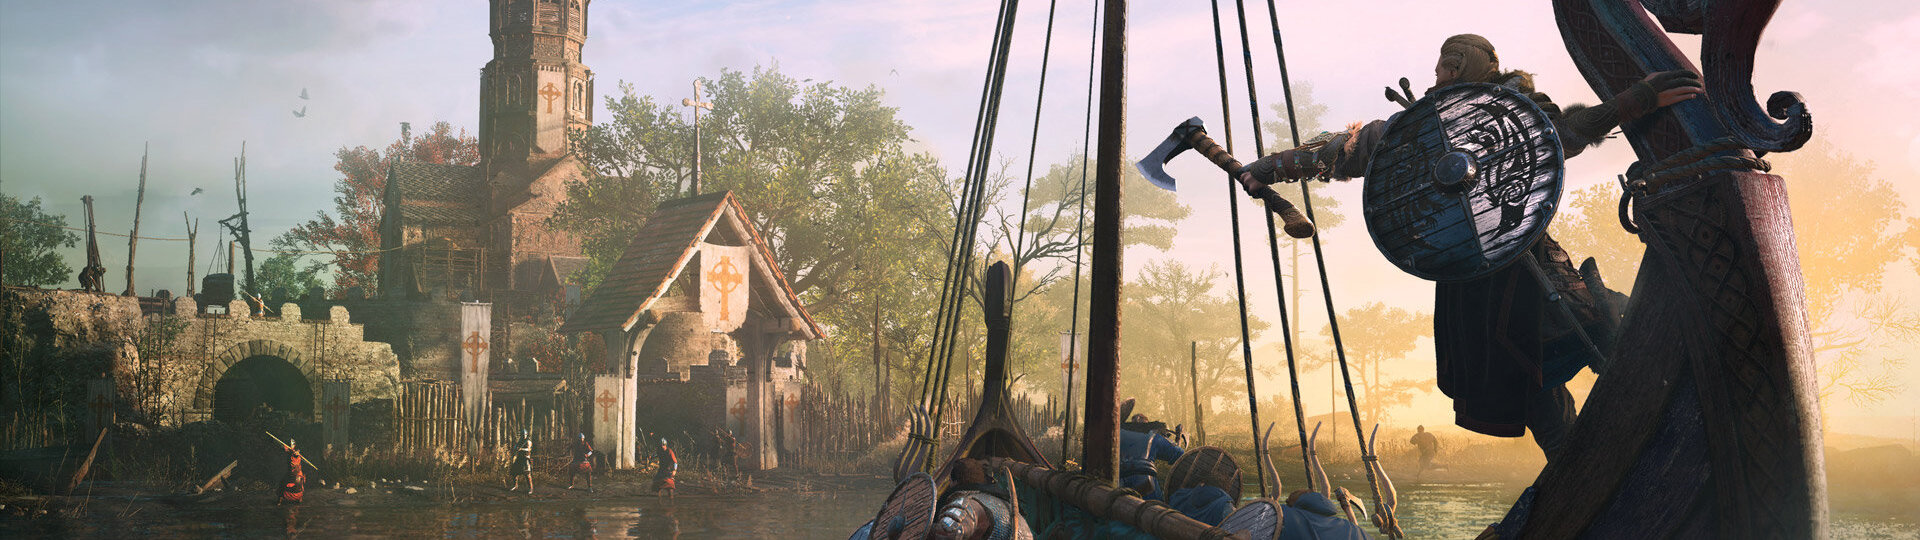 Assassin's Creed Valhalla čeká po vydání spousta obsahu | Novinky